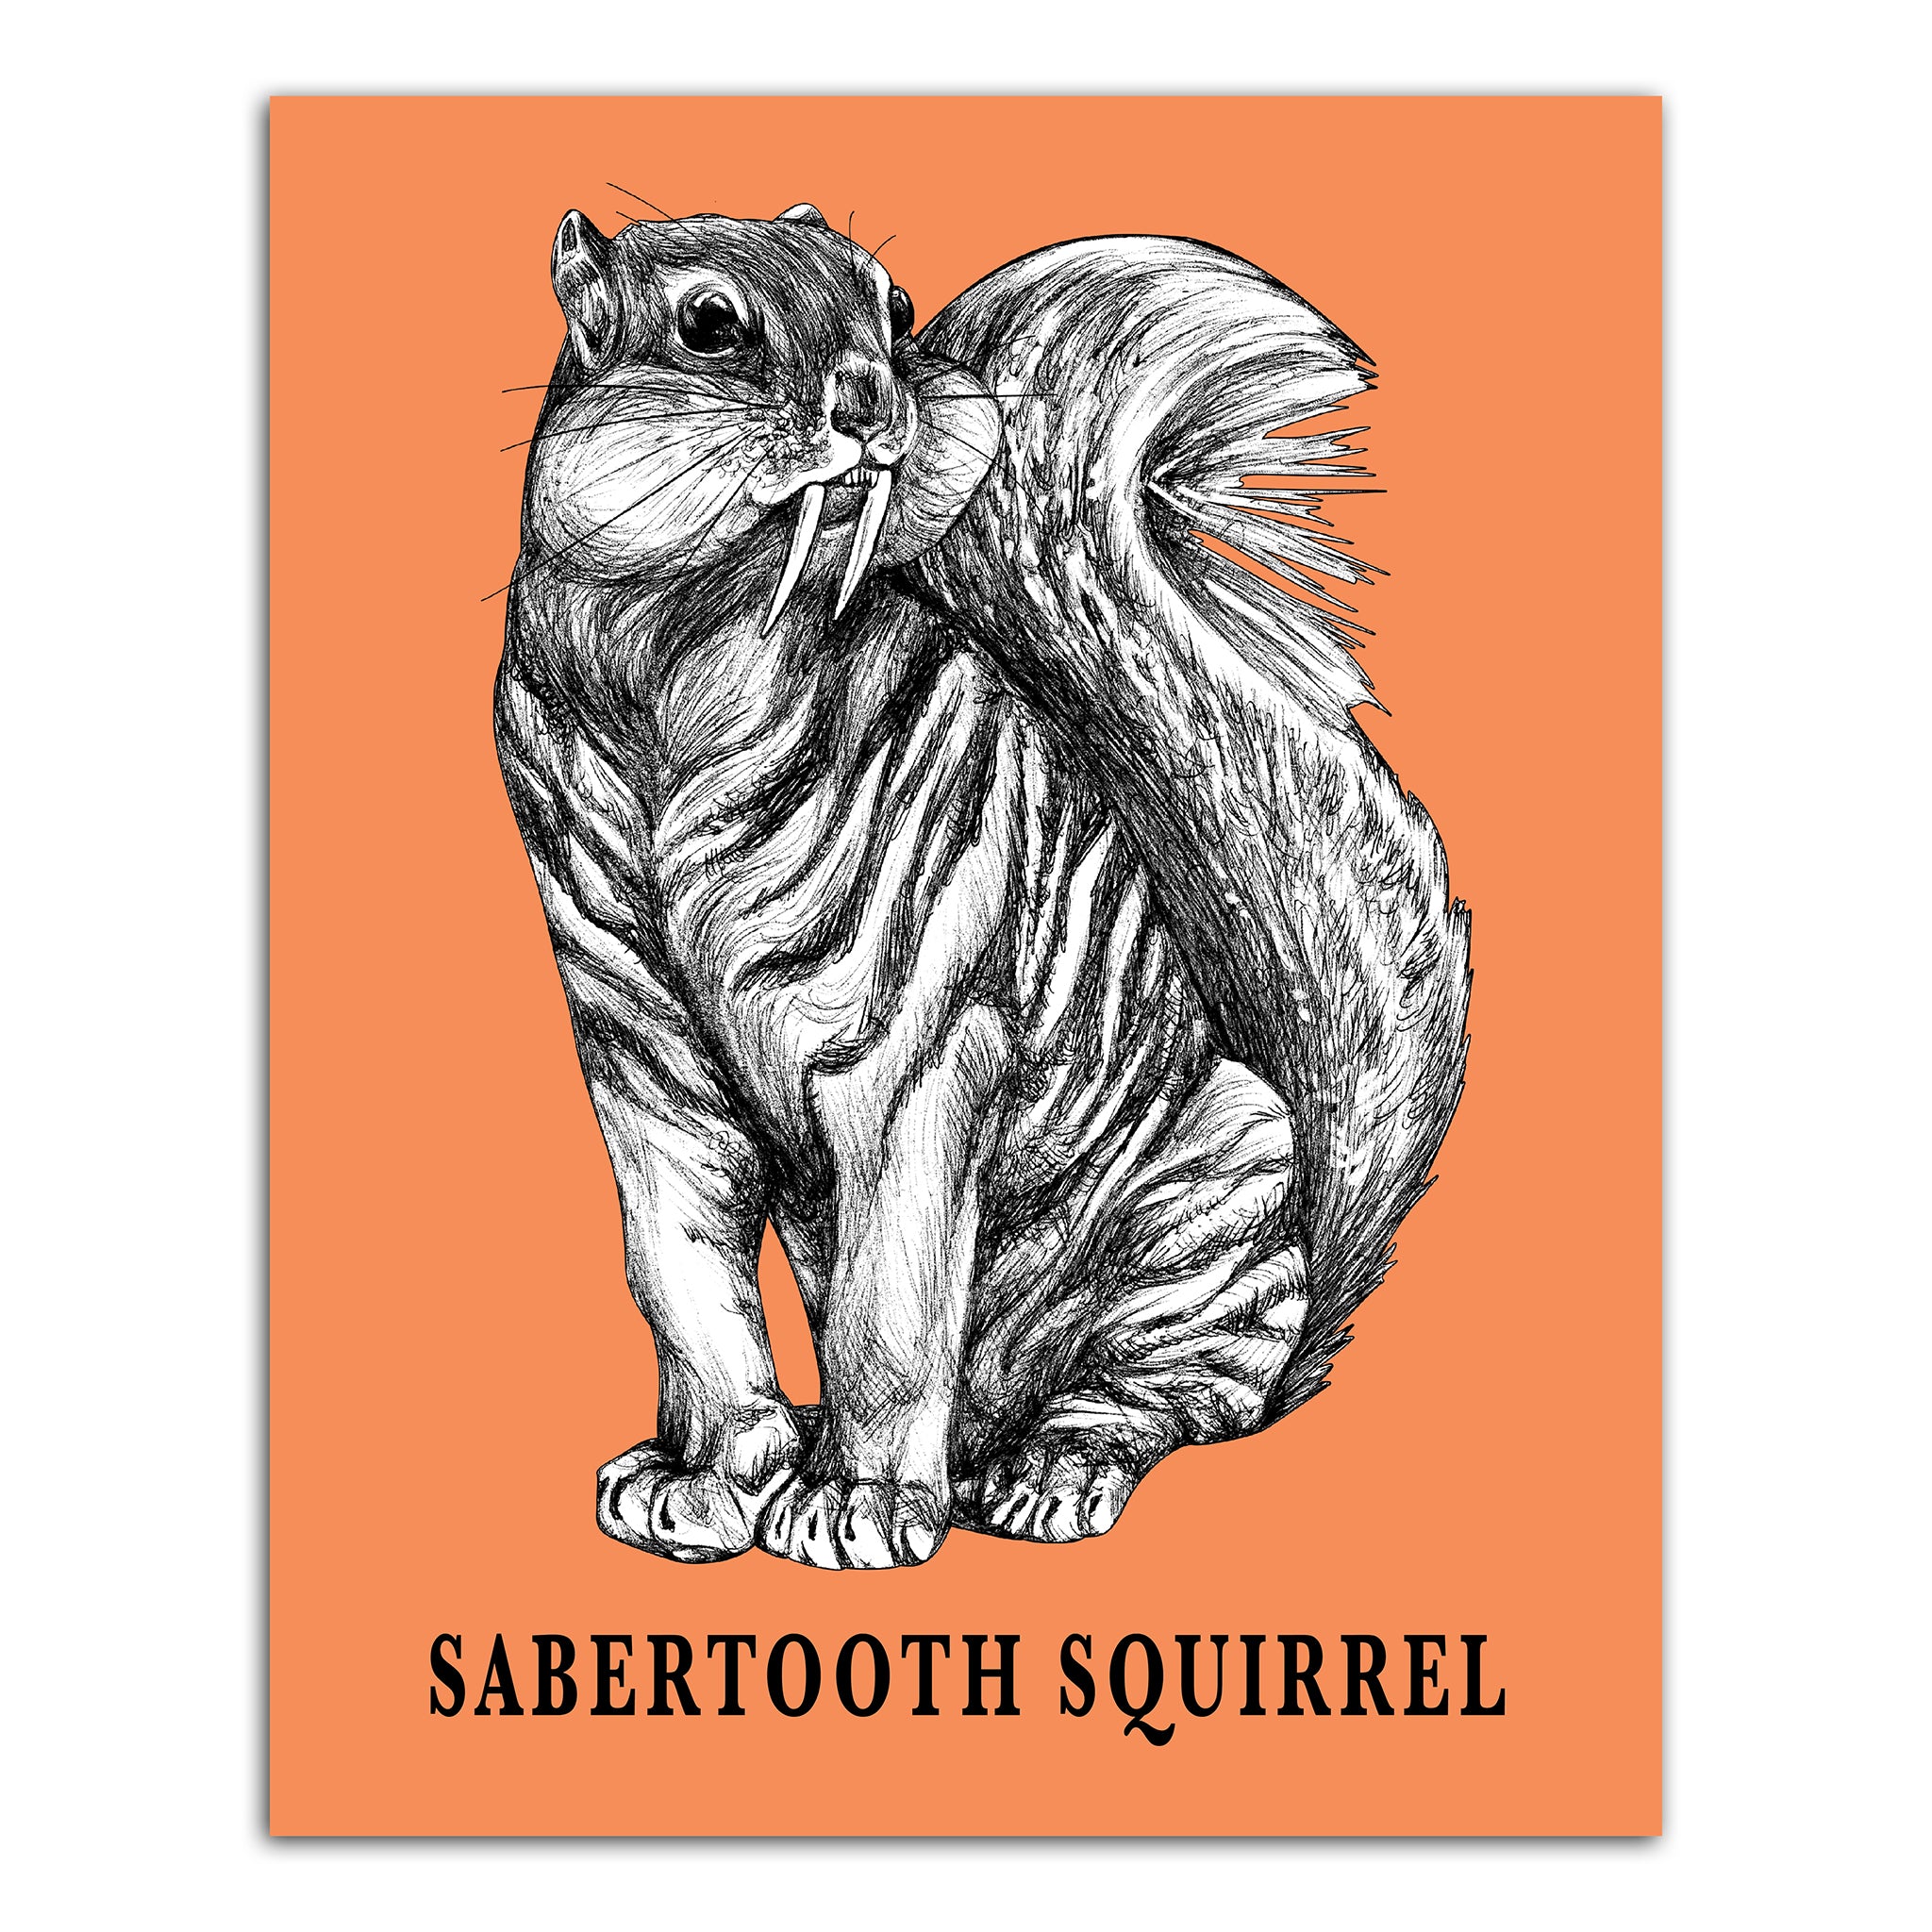 Sabertooth Squirrel | Sabertooth Tiger + Squirrel Hybrid Animal | 8x10" Color Print